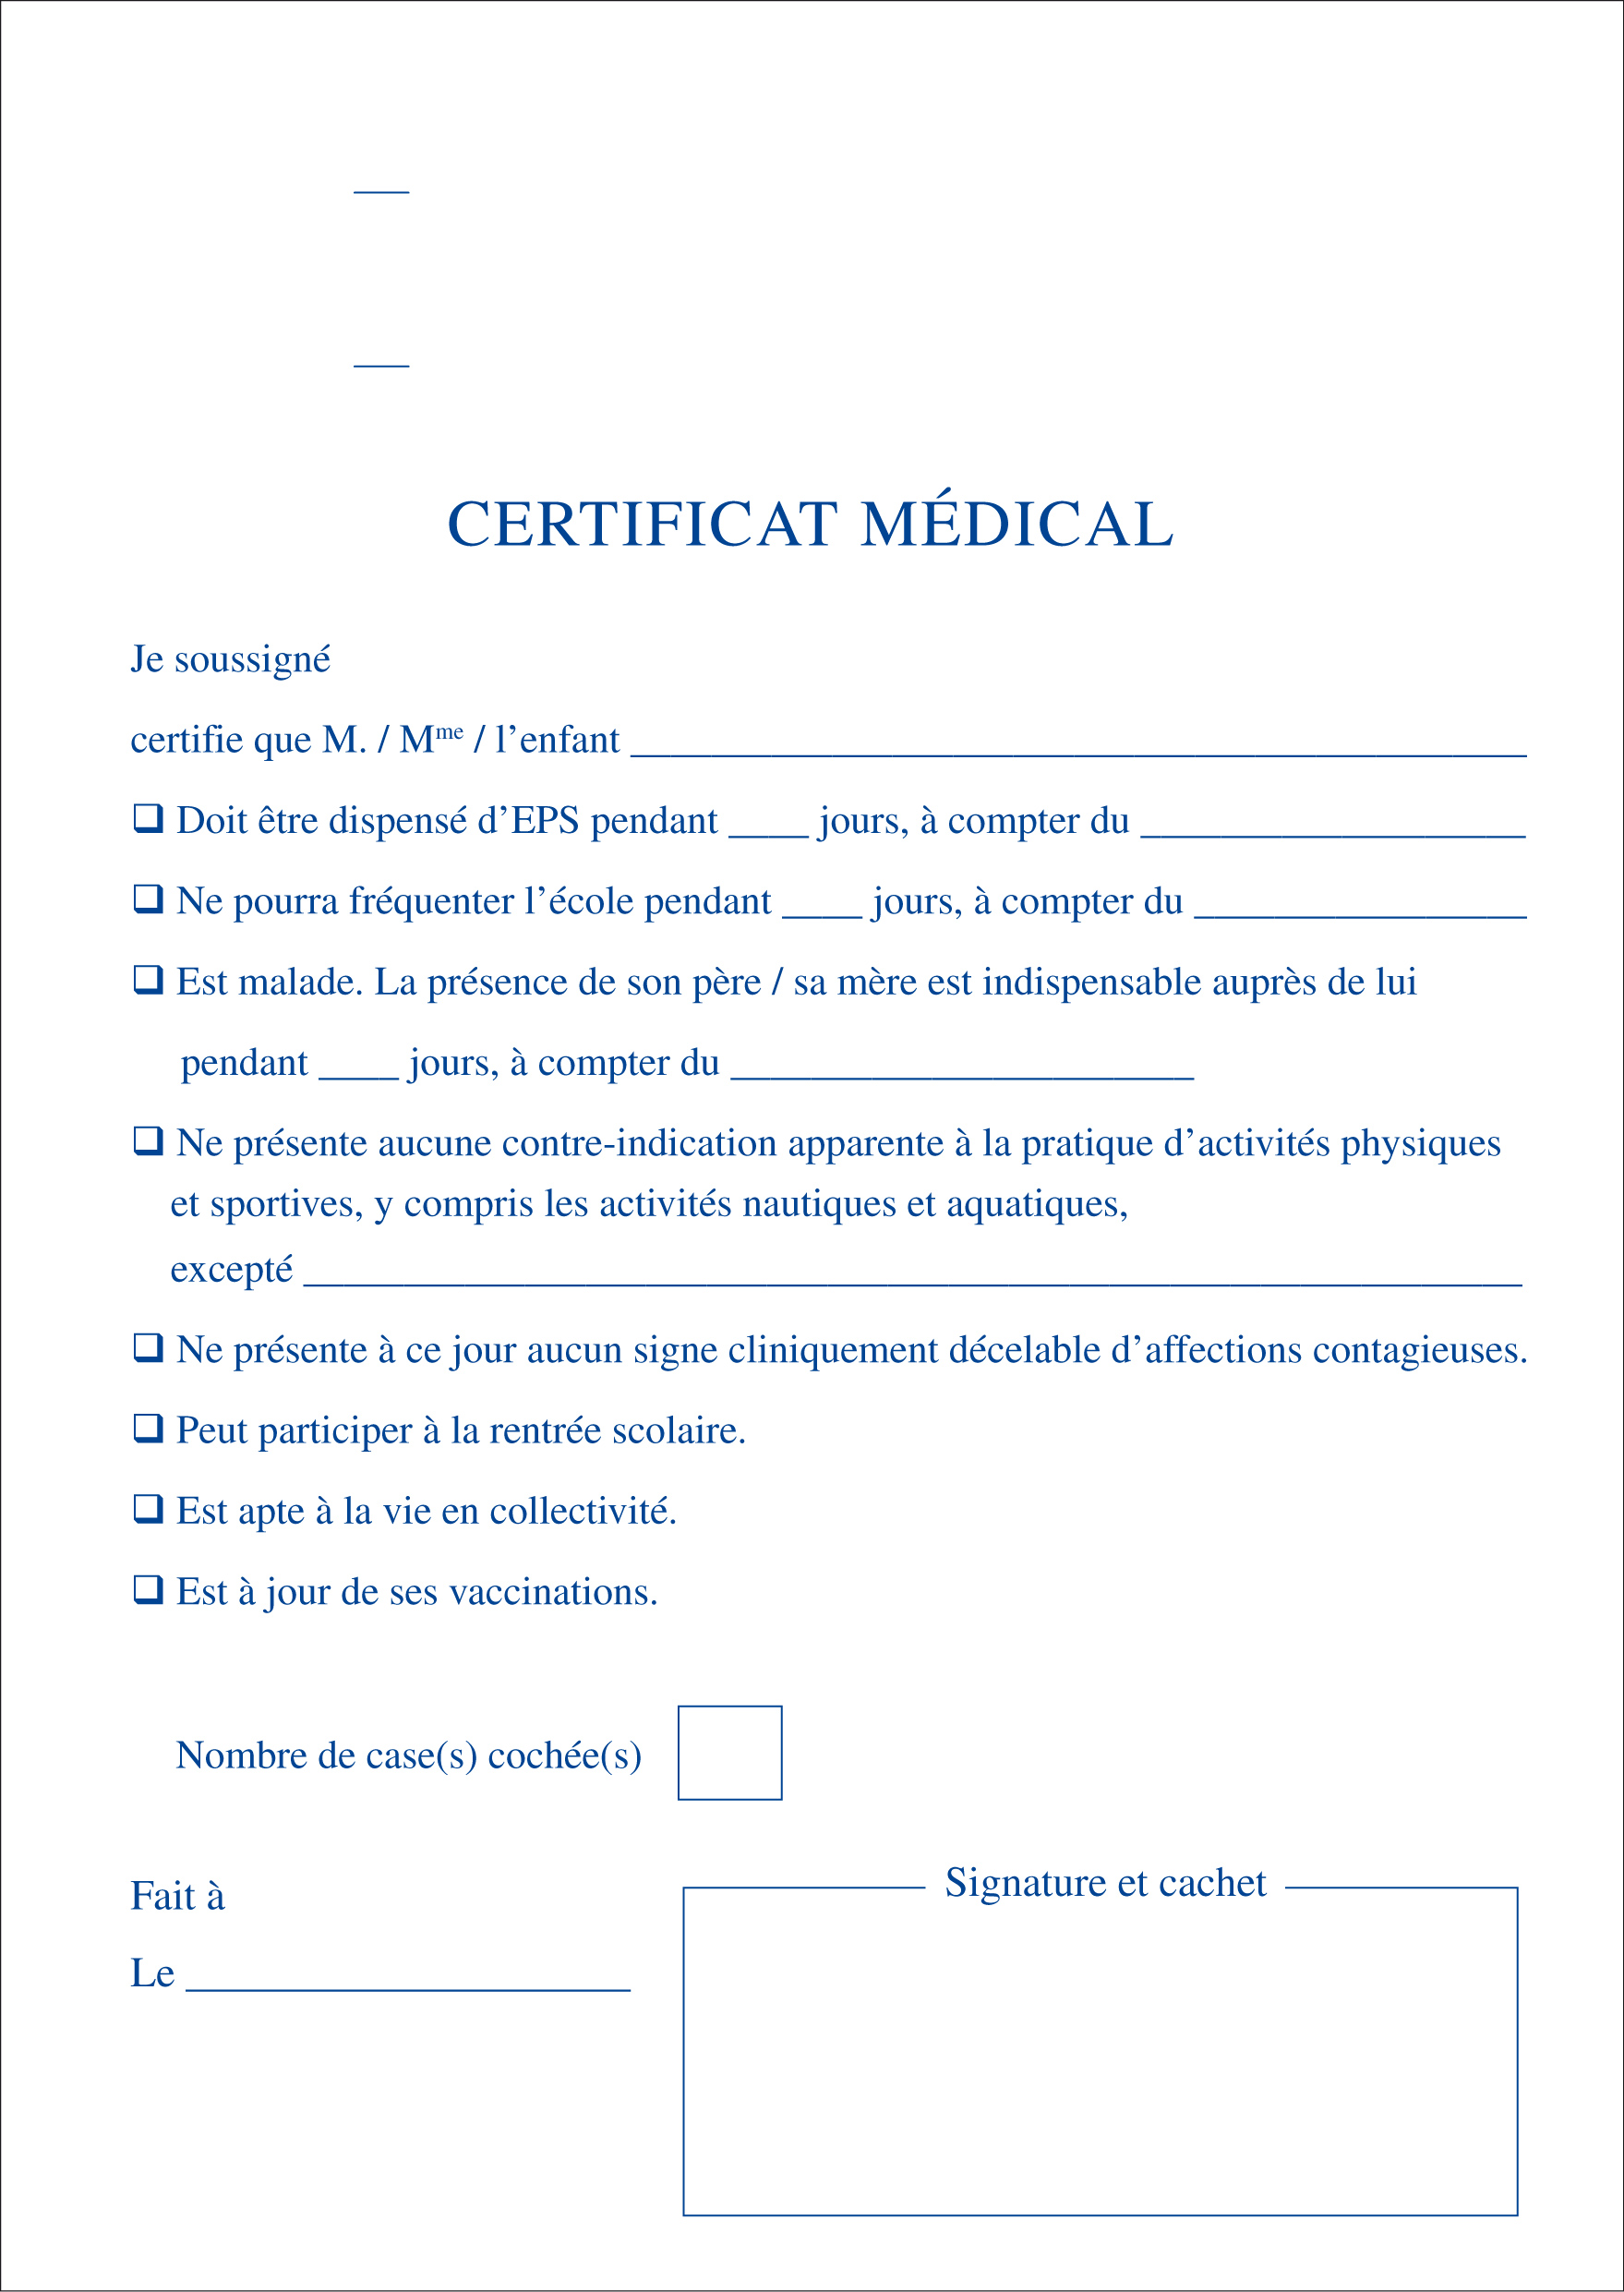 Certificat médical préimprimé format A5 (148 x 210).